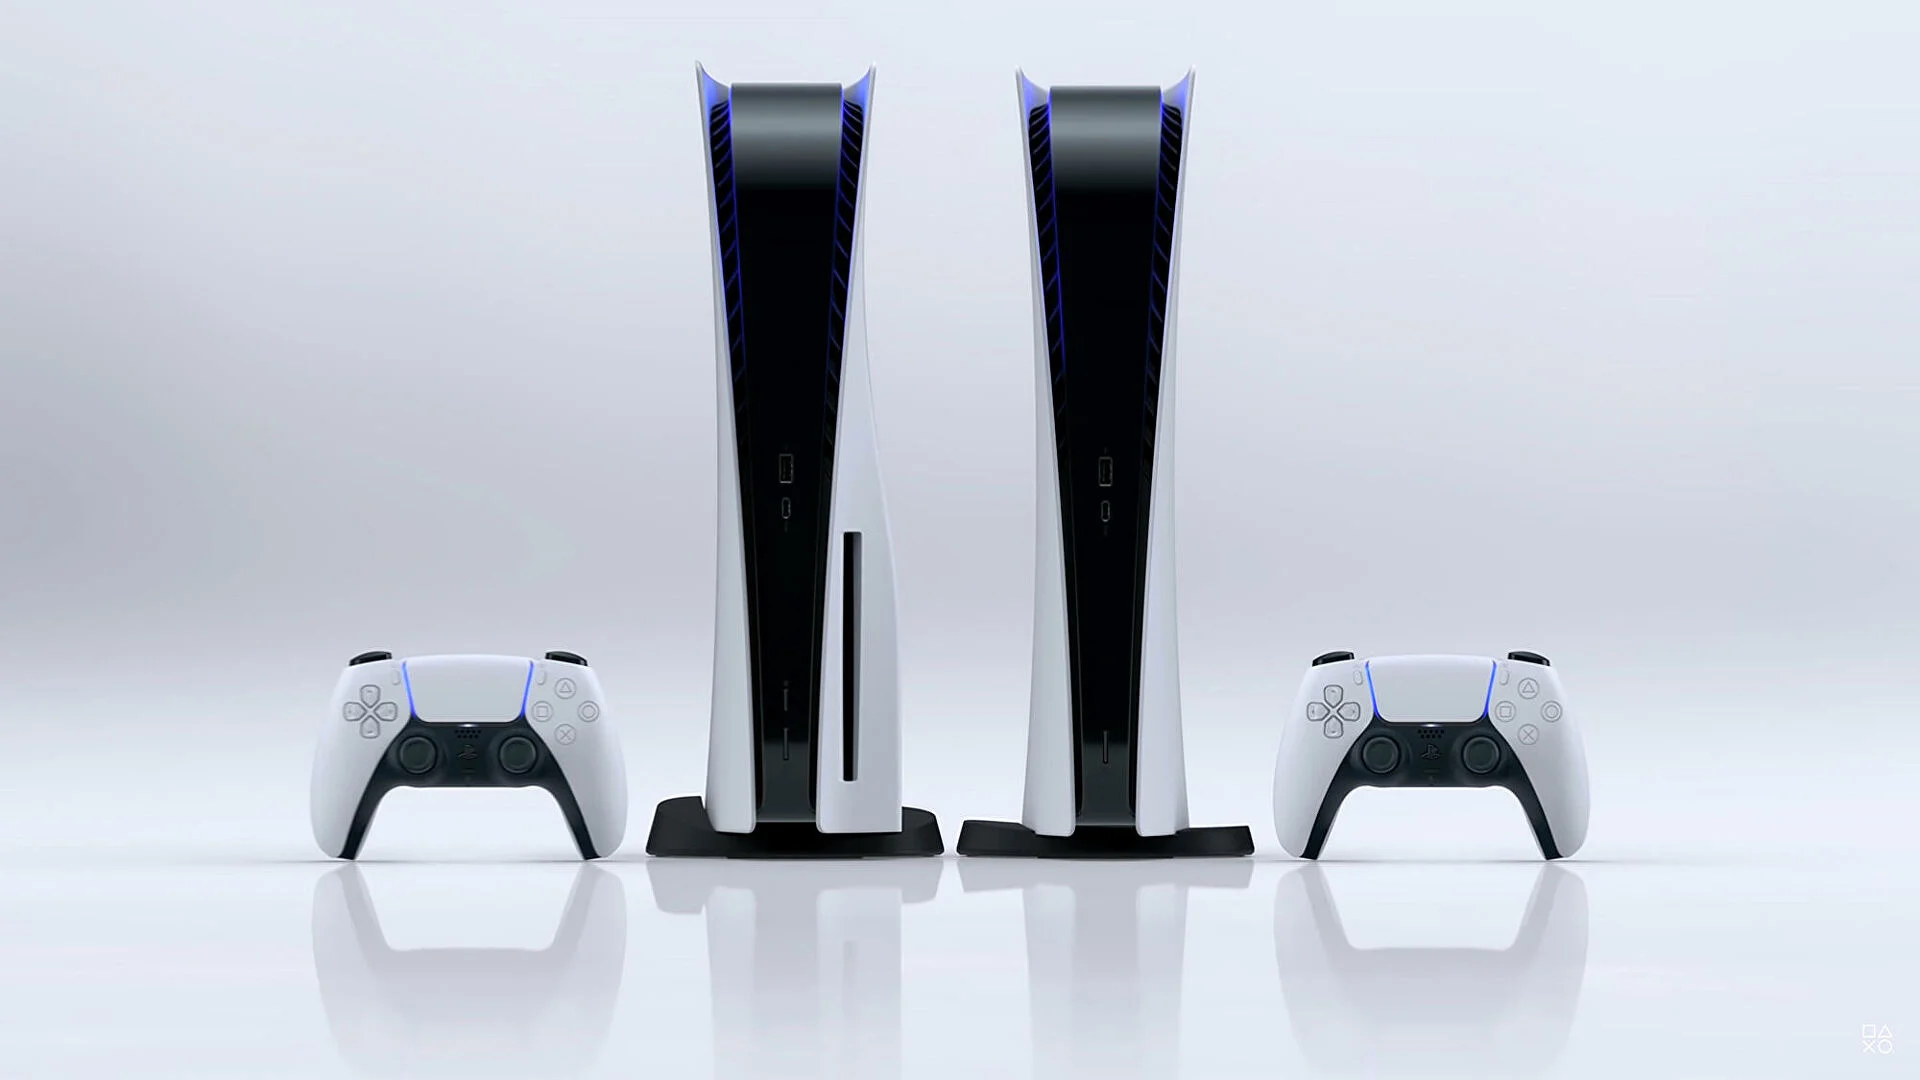 Всё о Sony PlayStation 5. Характеристики, размеры, игры, геймпад, обратная совместимость, сравнение с Xbox - фото 1